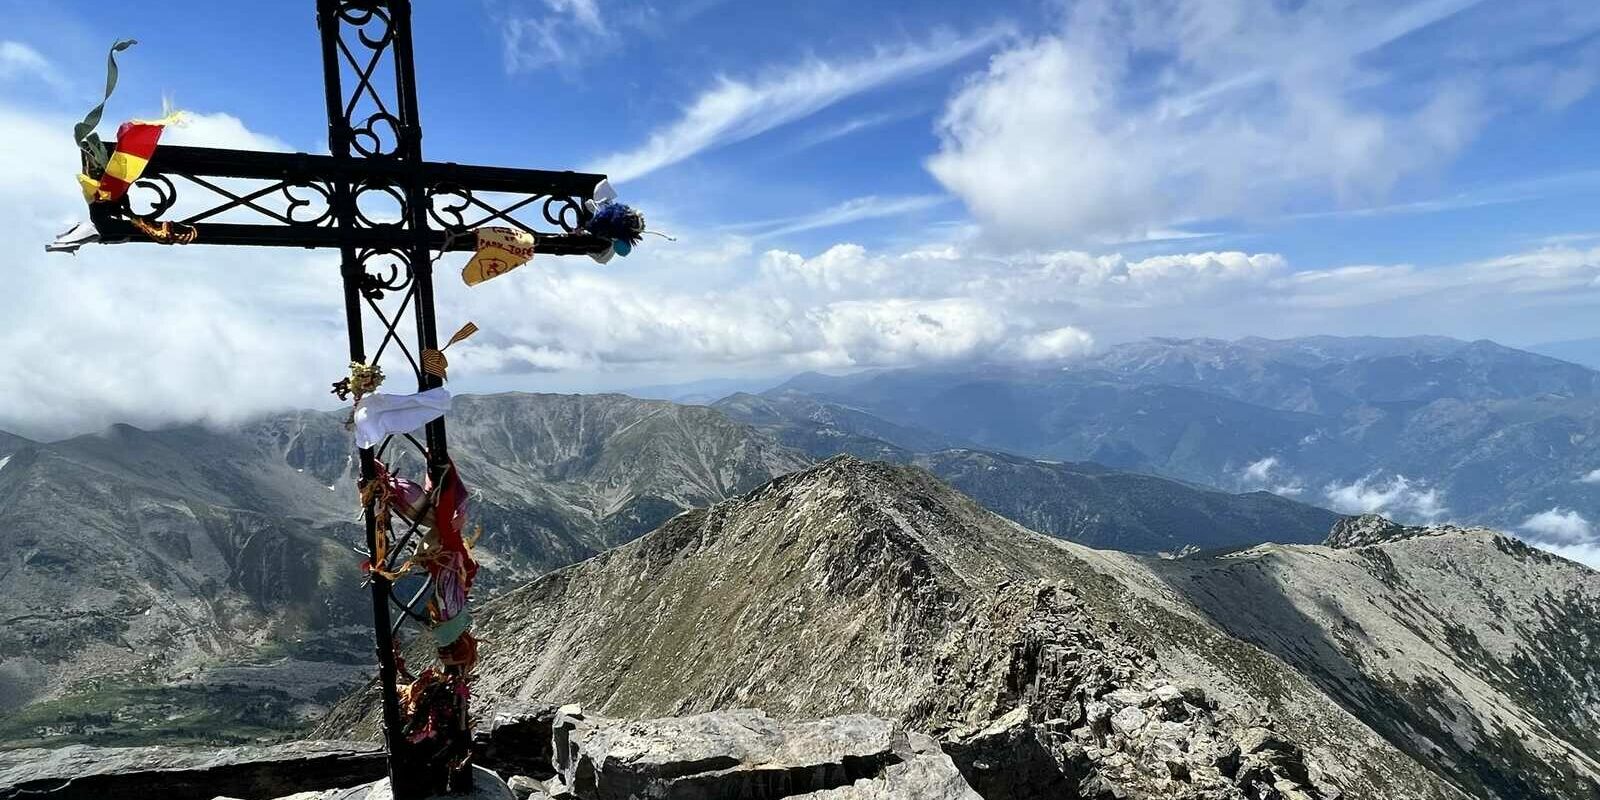 Le sommet du pic du Canigou - Pyrénées-Orientales